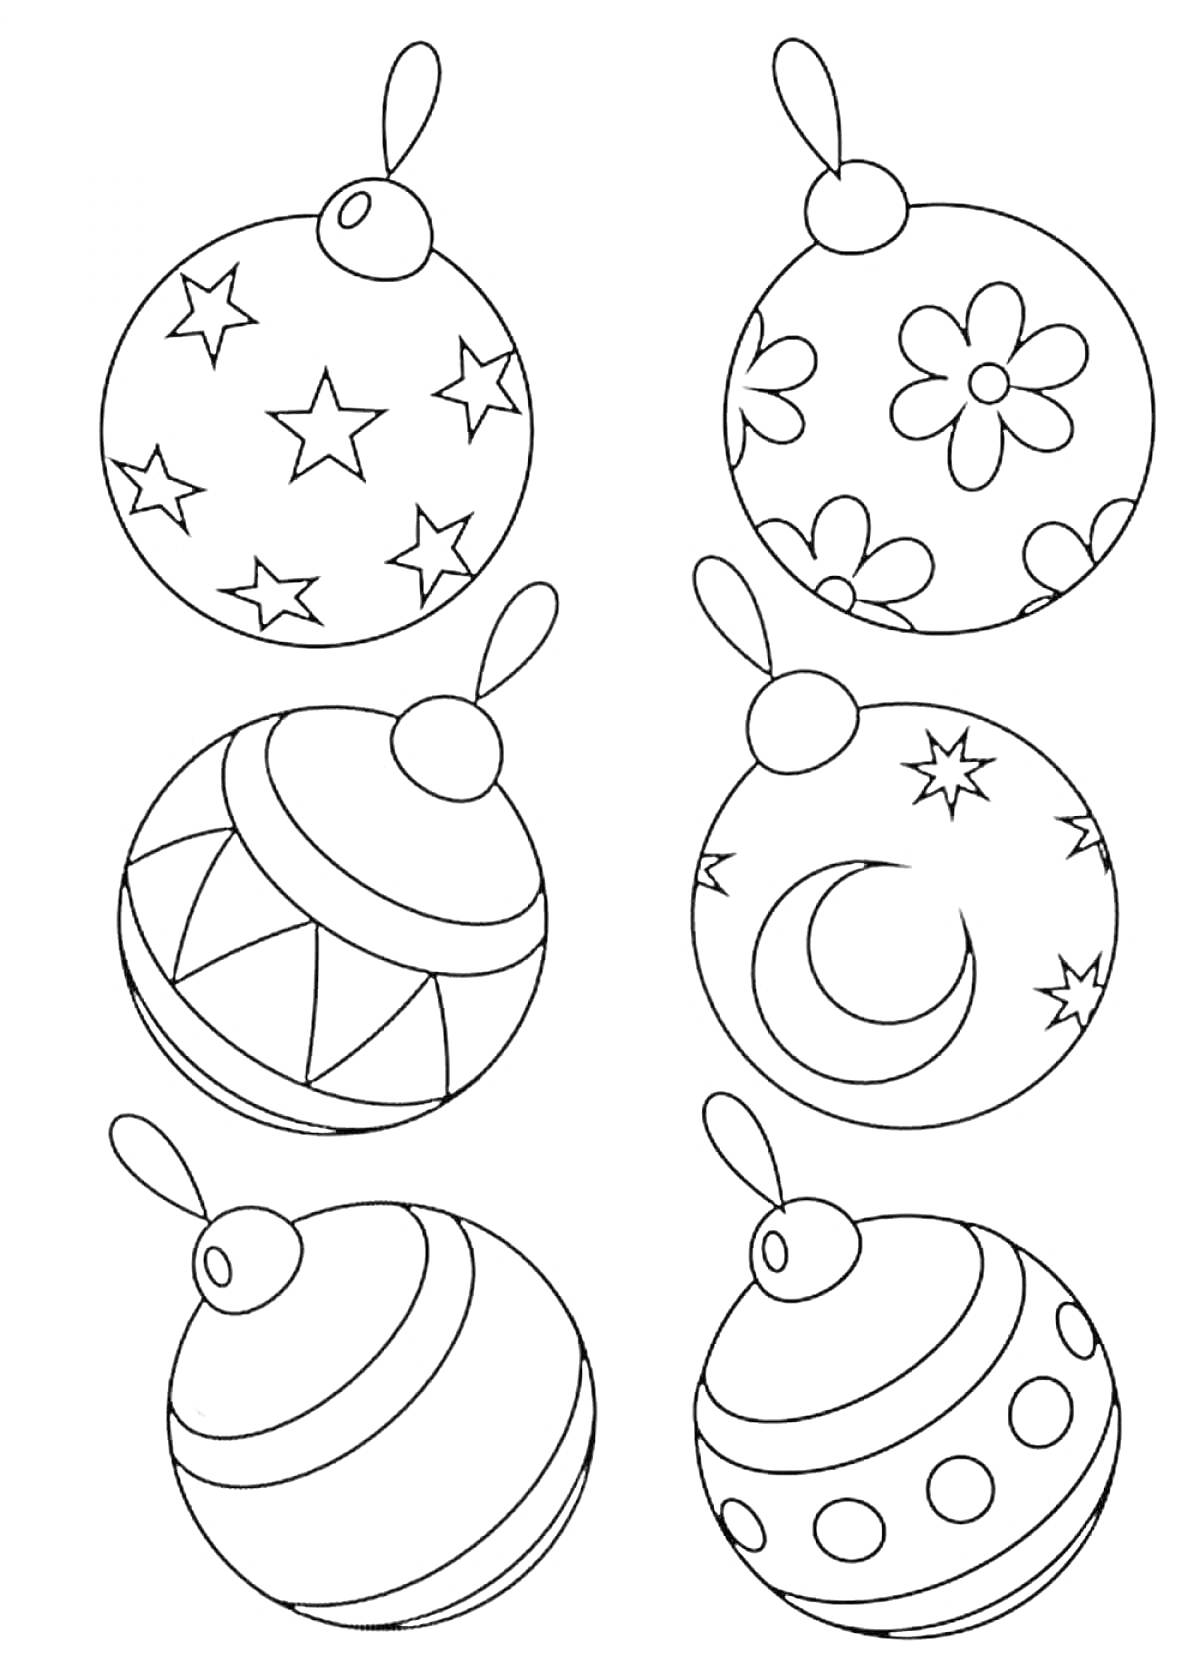 Раскраска с изображением шести новогодних шаров со звездами, цветами, геометрическими фигурами, полумесяцем, линиями и кружочками